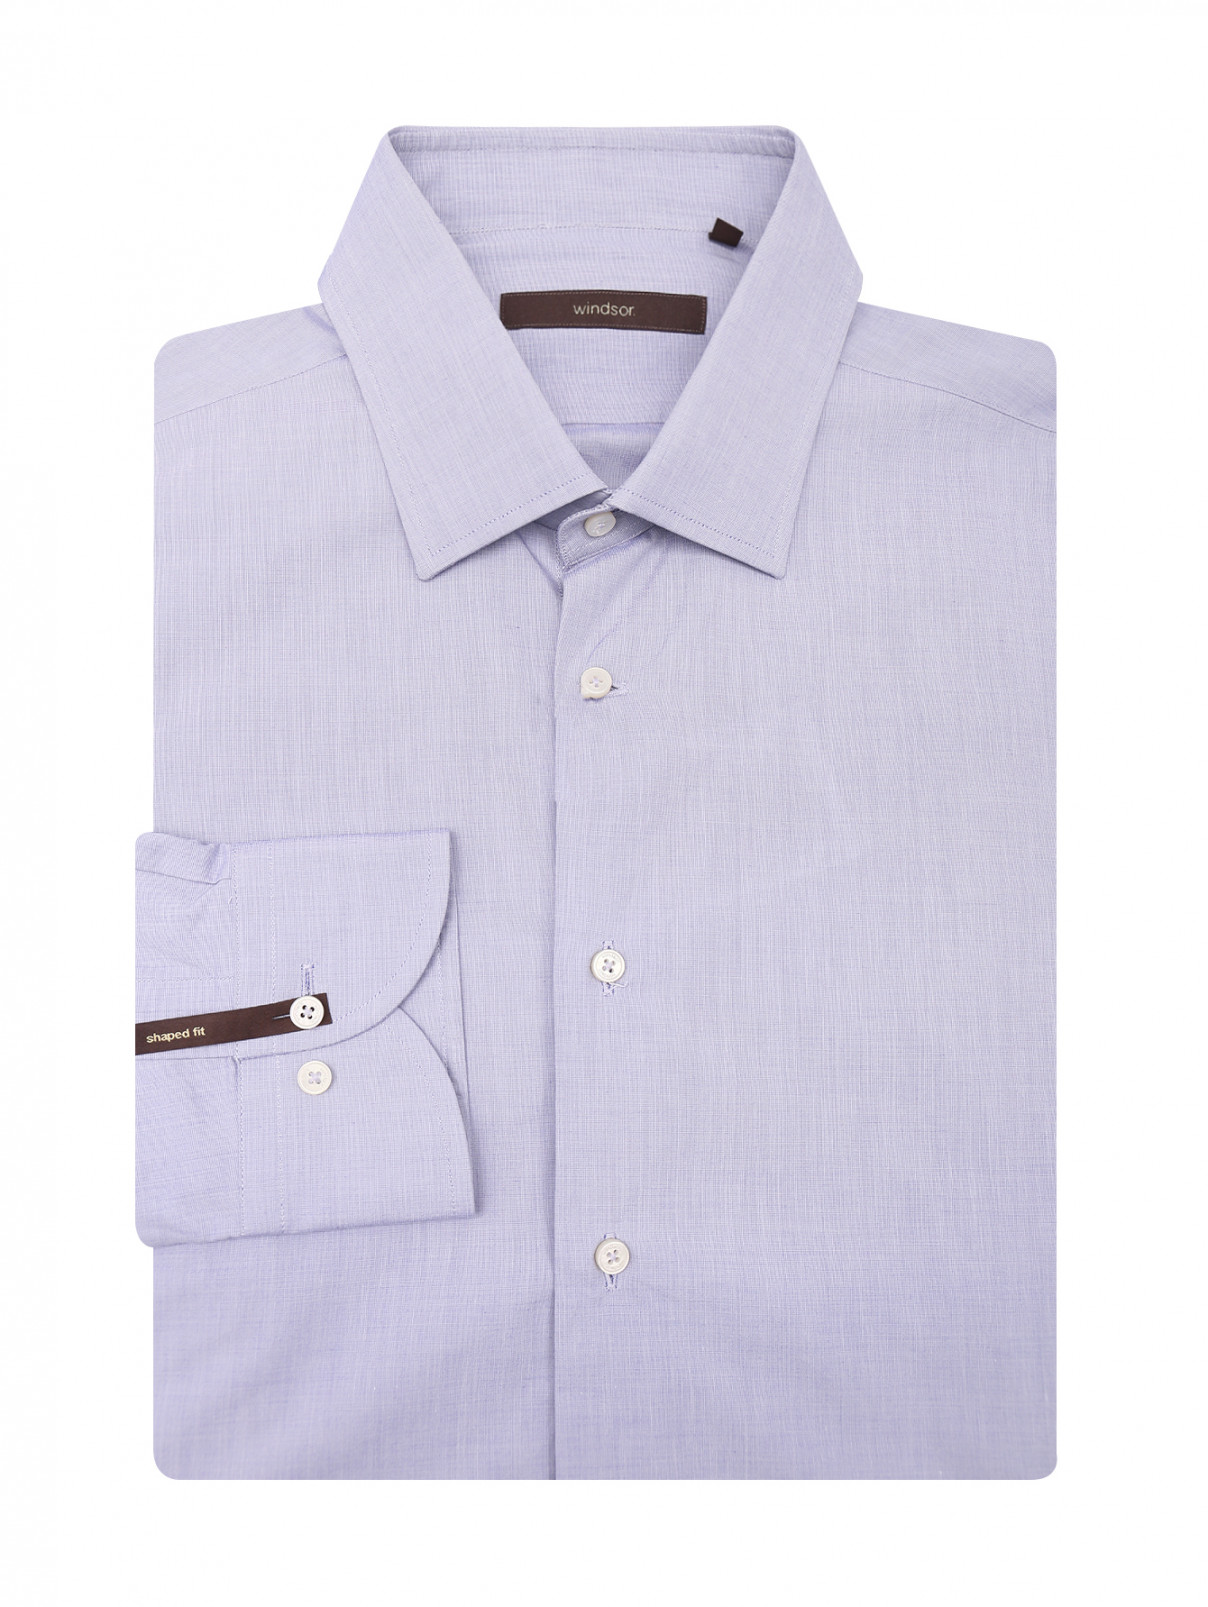 Однотонная рубашка из хлопка Windsor  –  Общий вид  – Цвет:  Синий